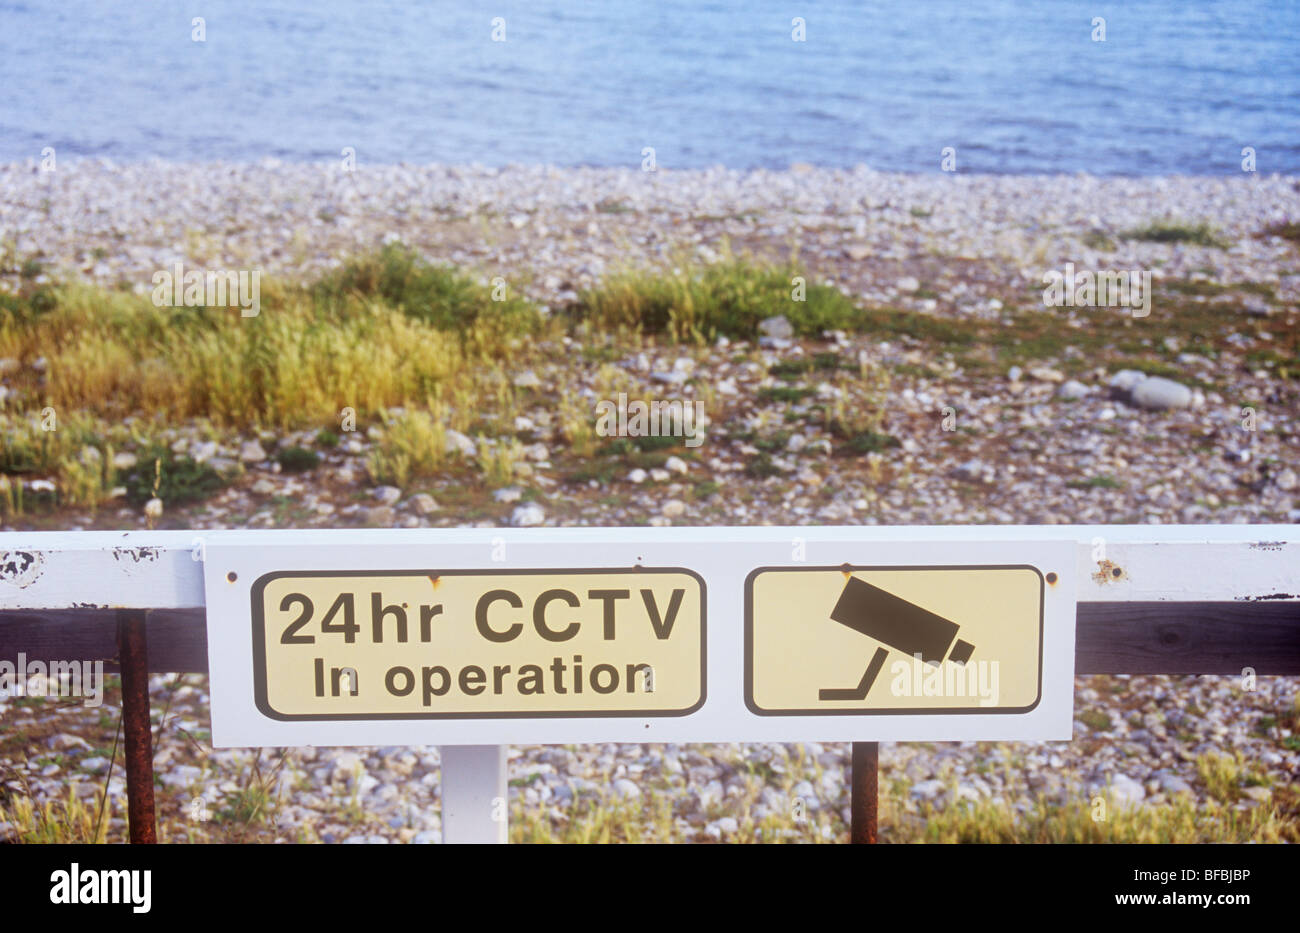 Playa de grava ásperos con hierbas y mar con oxidada puerta e icónica imagen de cámara CCTV de 24hr de advertencia y en funcionamiento Foto de stock